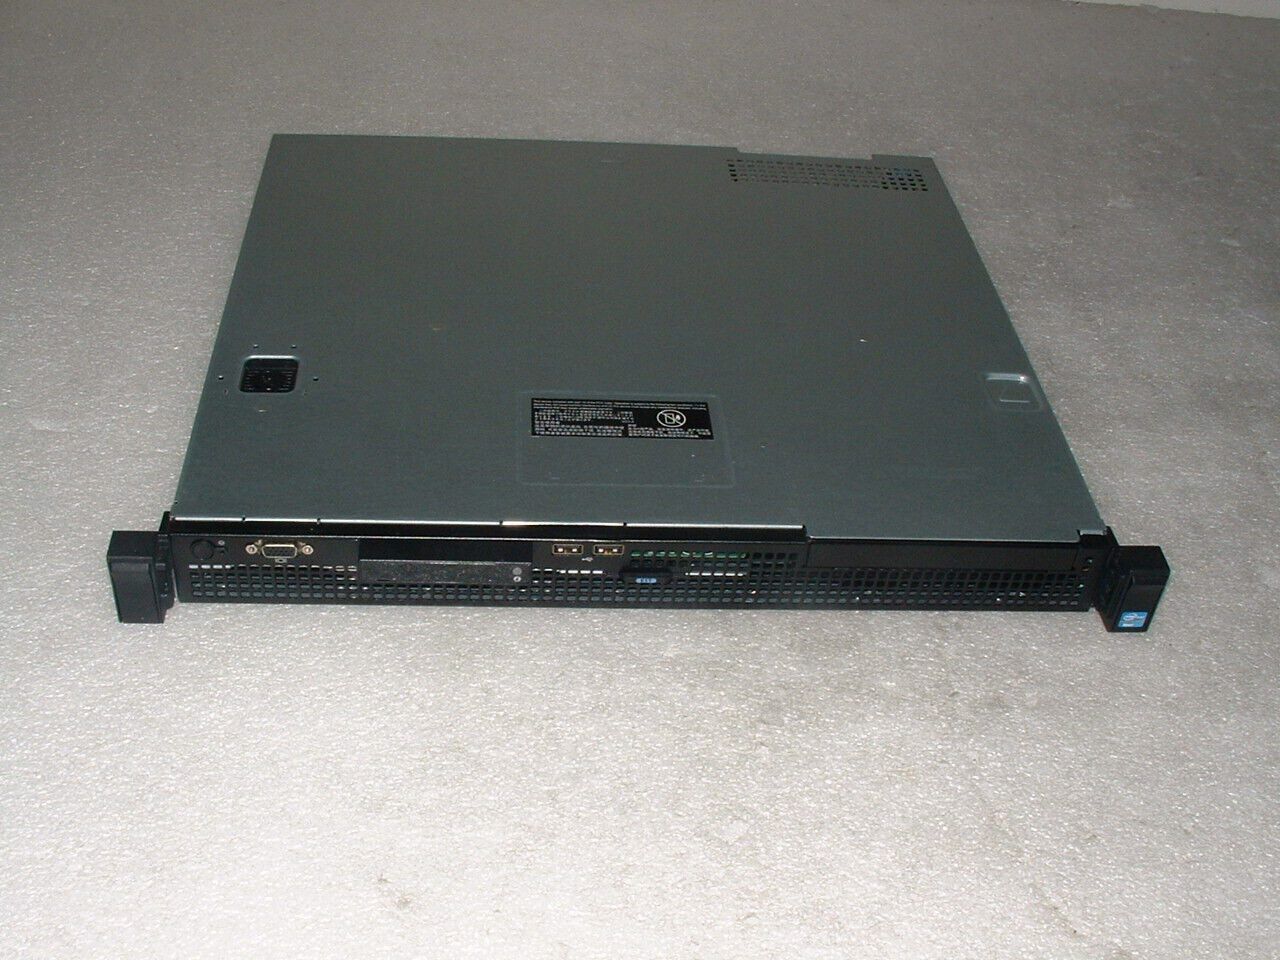 Dell Poweredge R210 II Server Xeon E3-1220 v2 3.1ghz Quad Core / 16gb / 1x Tray